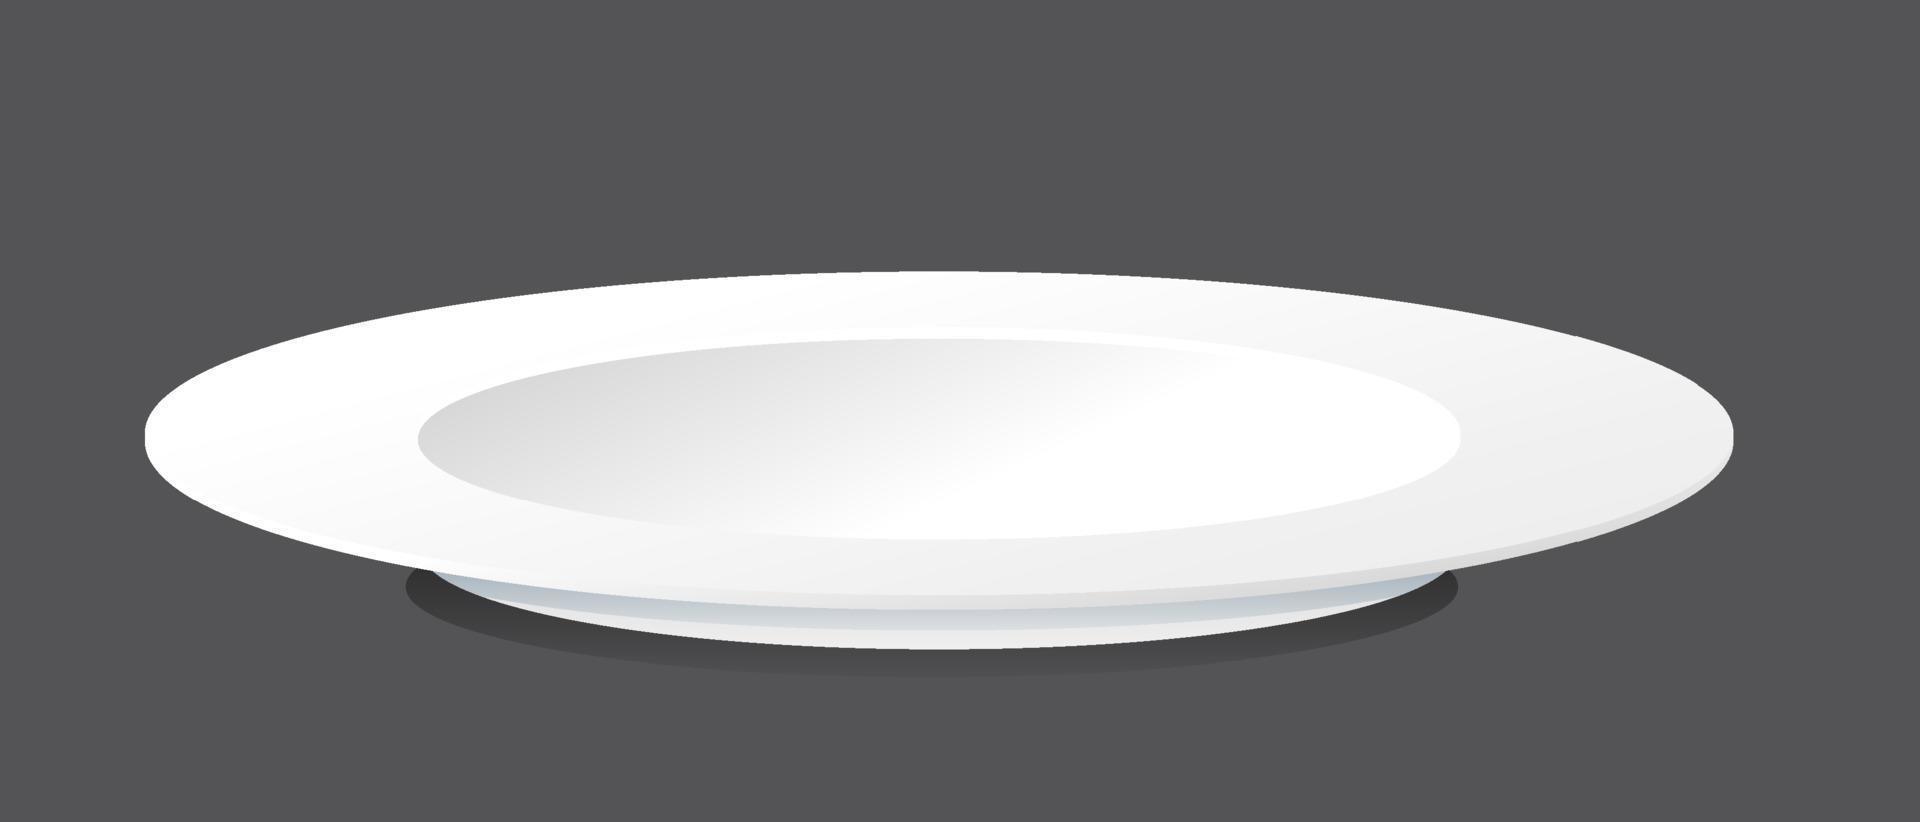 White plain plate on black background vector